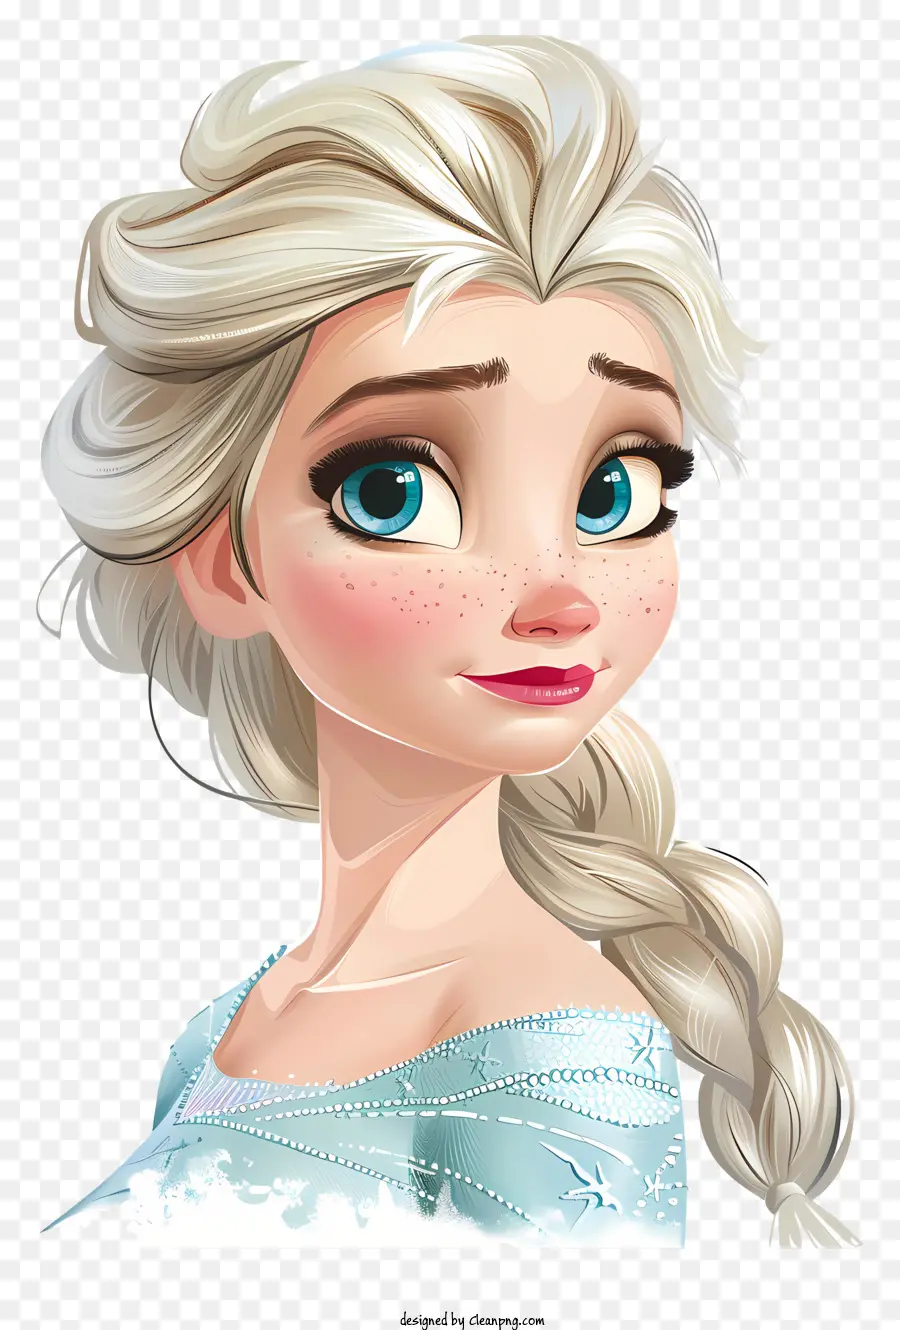 Elsa - Principessa triste con capelli biondi e collana di perle